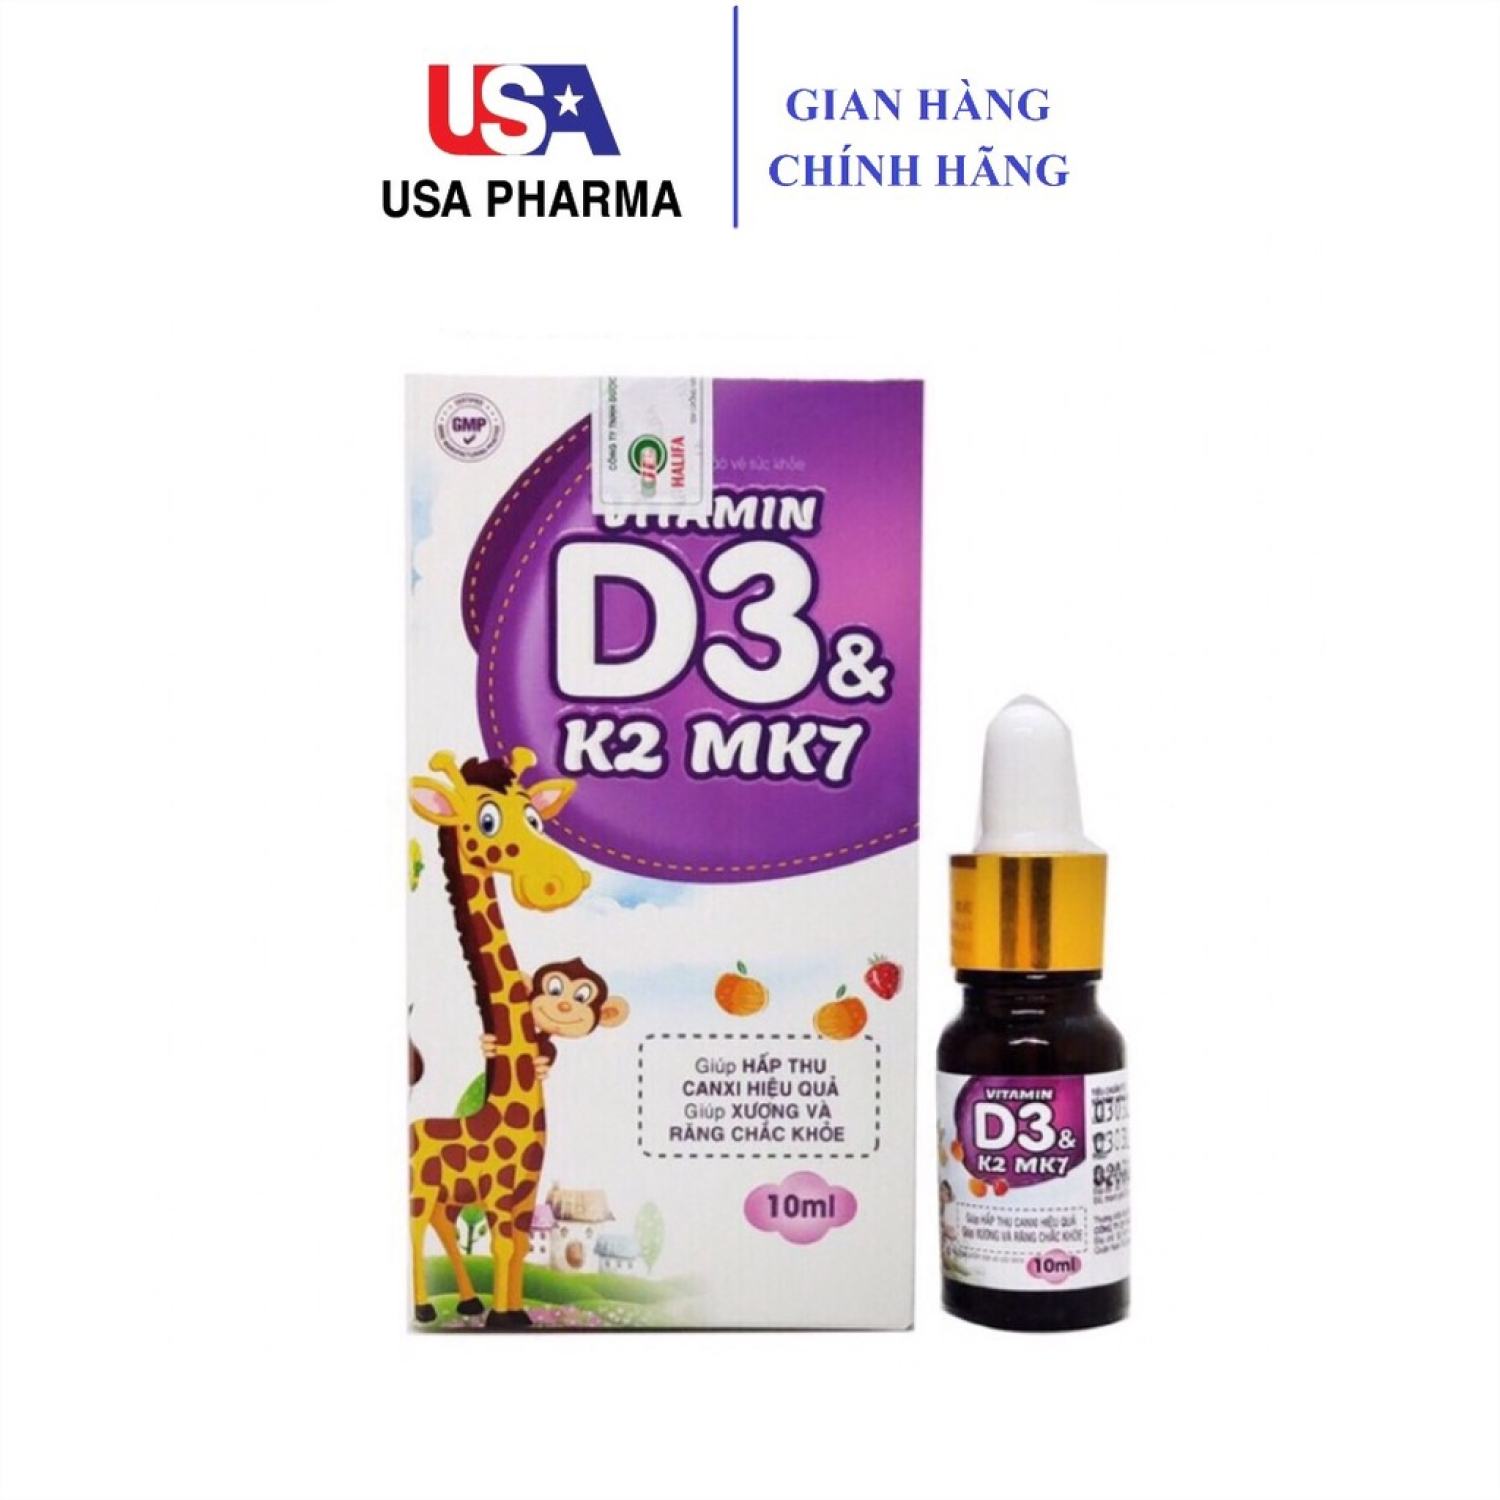 Vitamin D3 K2 Mk7 nhỏ giot giúp bé hấp thụ tăng trưởng chiều cao, cân nặng